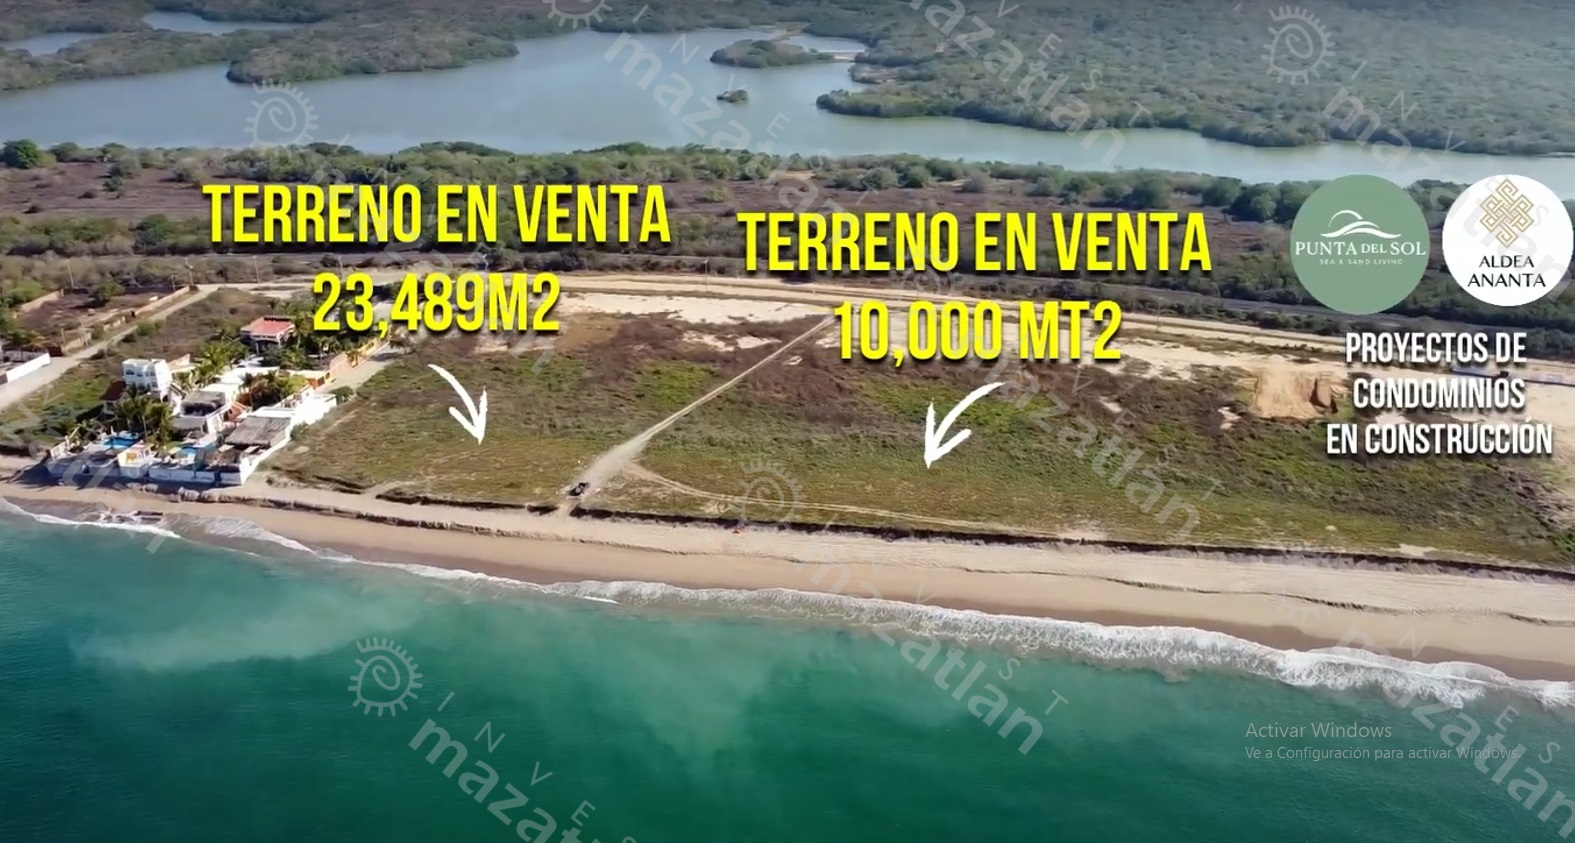 Terreno de 2.3 has en La Playa el Delfín – OPORTUNIDAD EN VENTA!